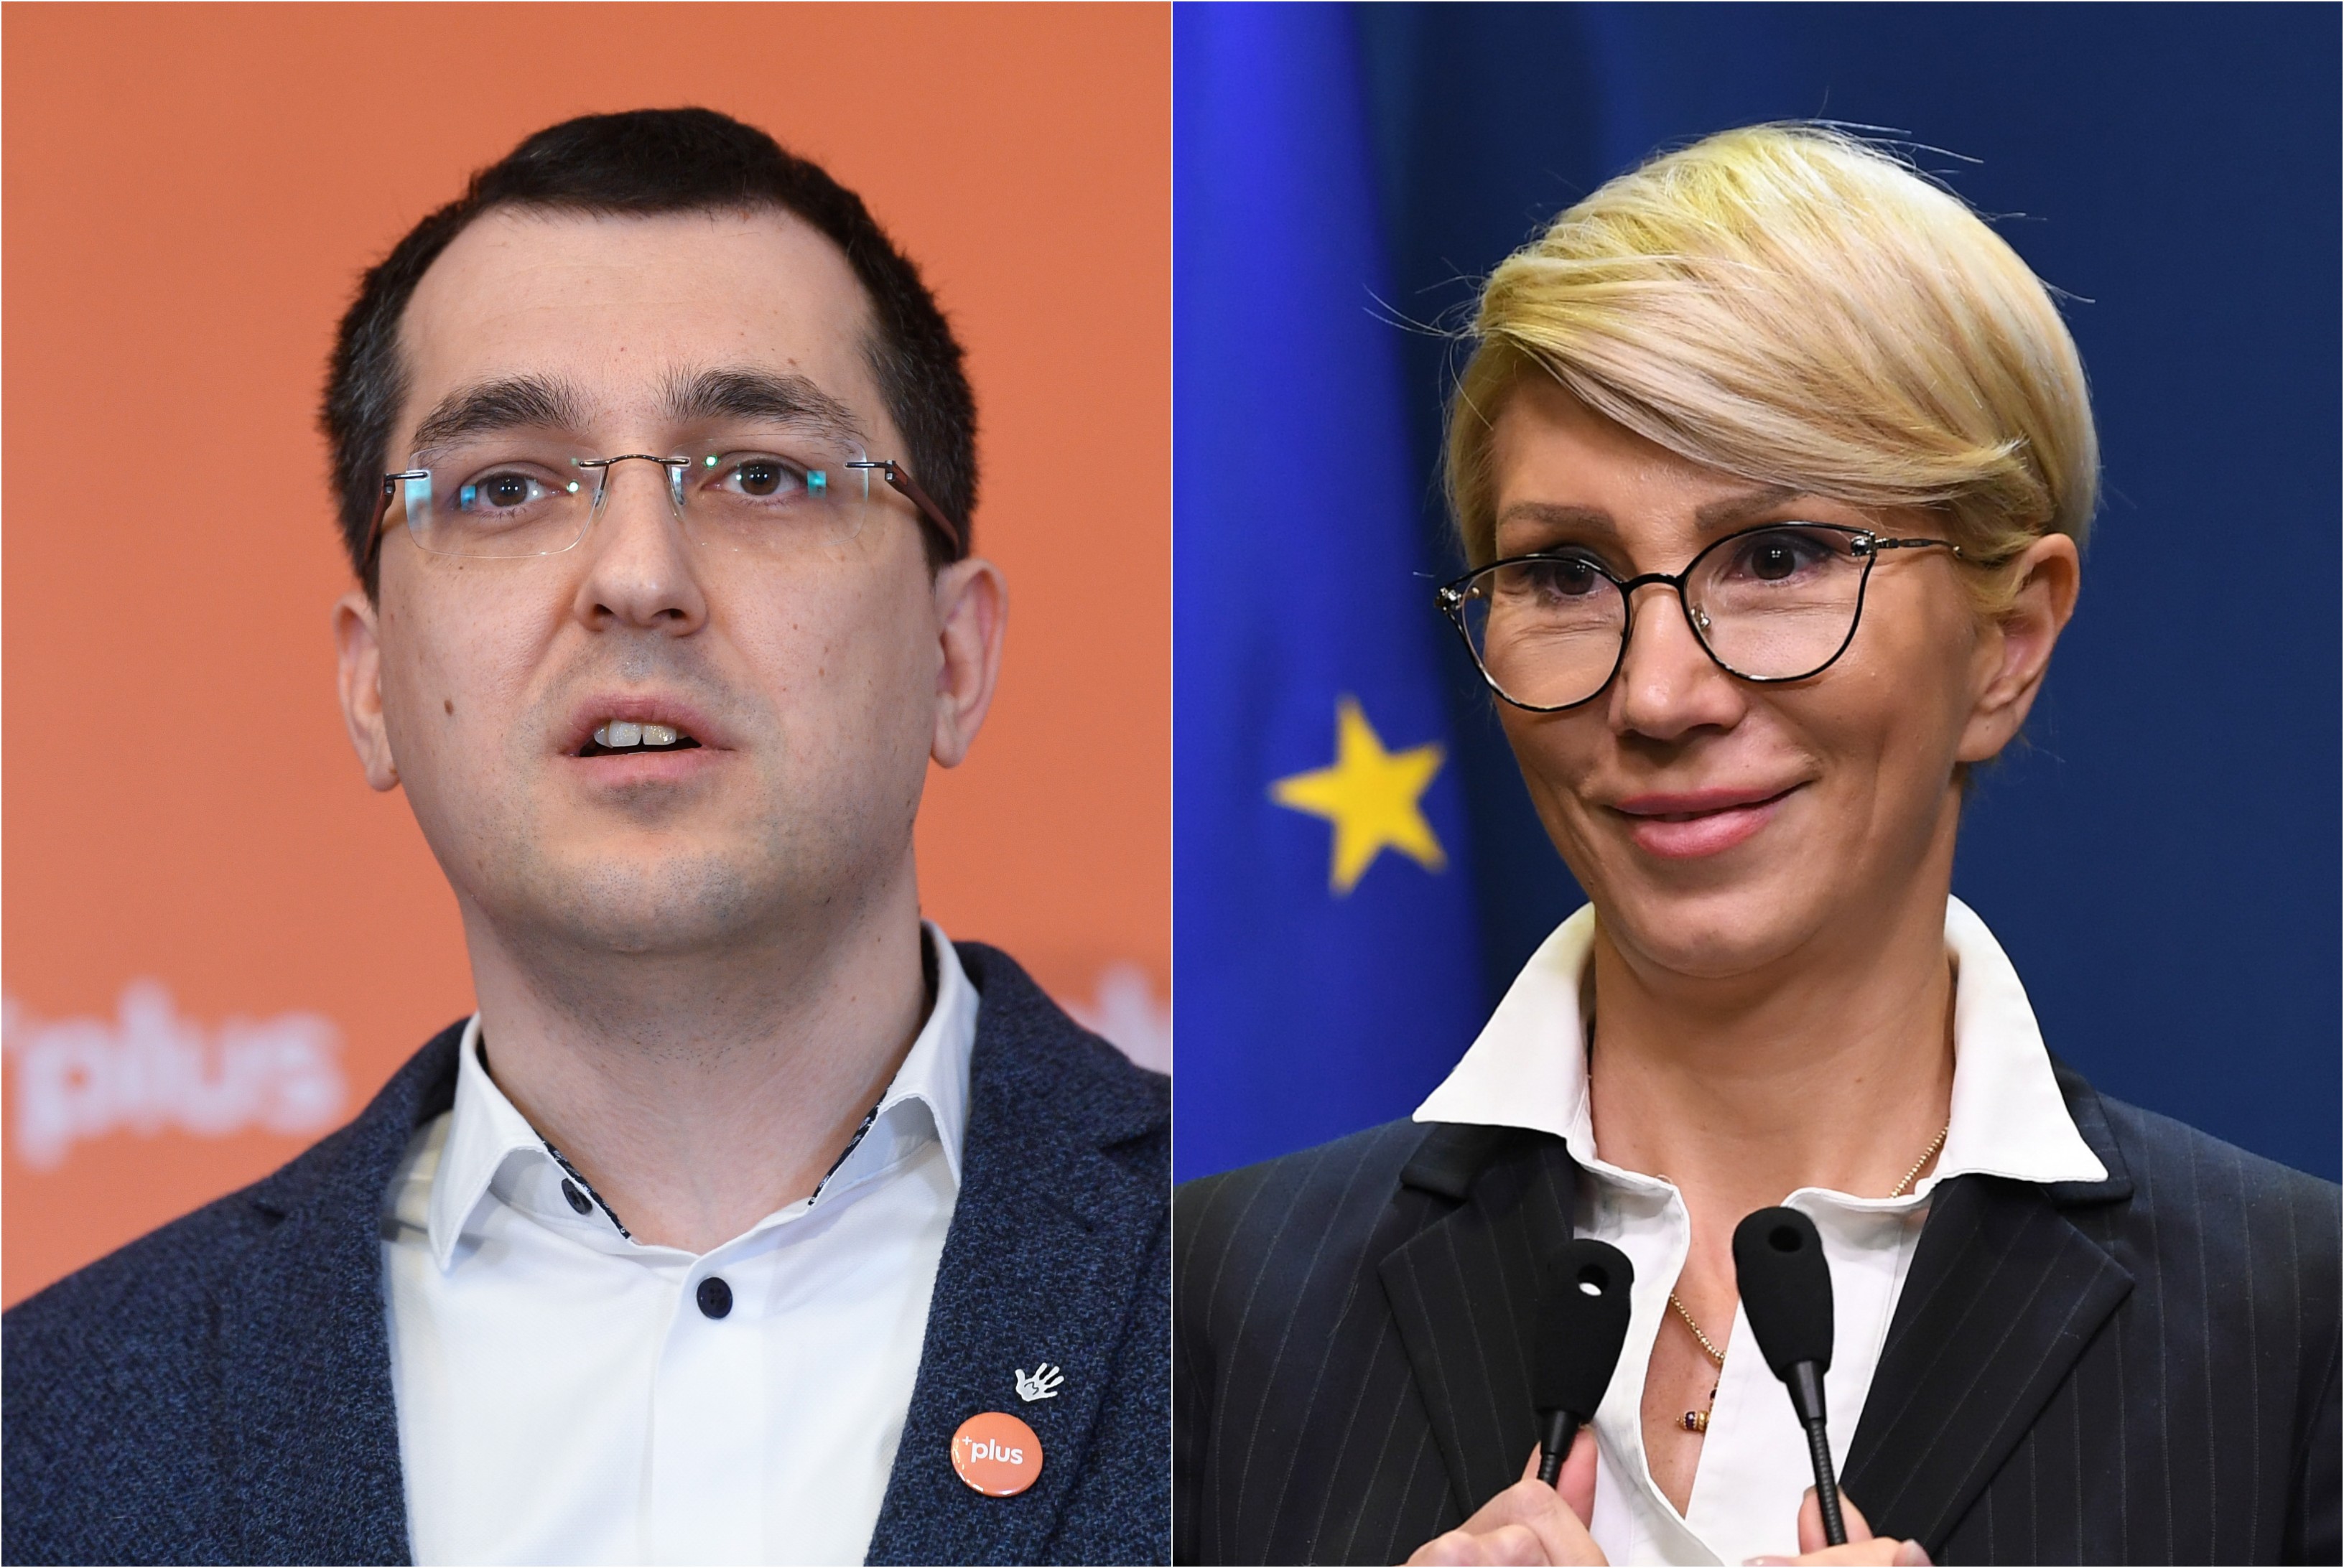 Miniștrii Vlad Voiculescu și Raluca Turcan pot fi amendați pentru că nu au purtat mască